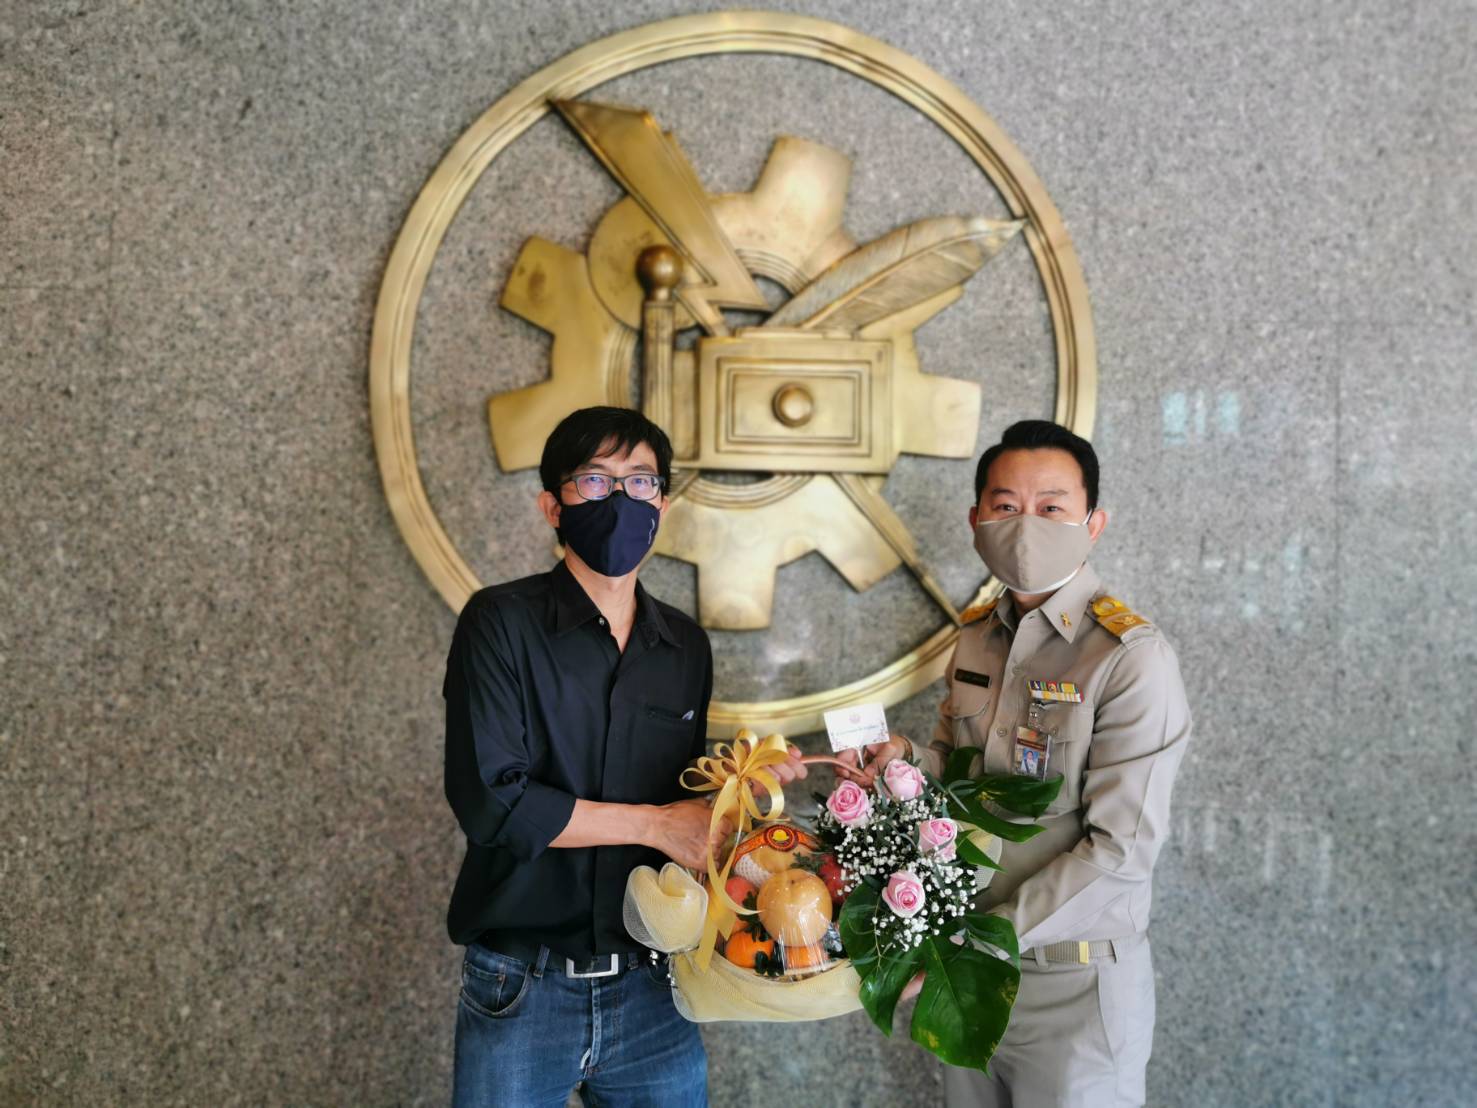 ผู้อำนวยการสำนักประชาสัมพันธ์ มอบกระเช้าดอกไม้แสดงความยินดีเนื่องในโอกาสคล้ายวันก่อตั้งหนังสือพิมพ์ไทยรัฐ ครบรอบ 72 ปี